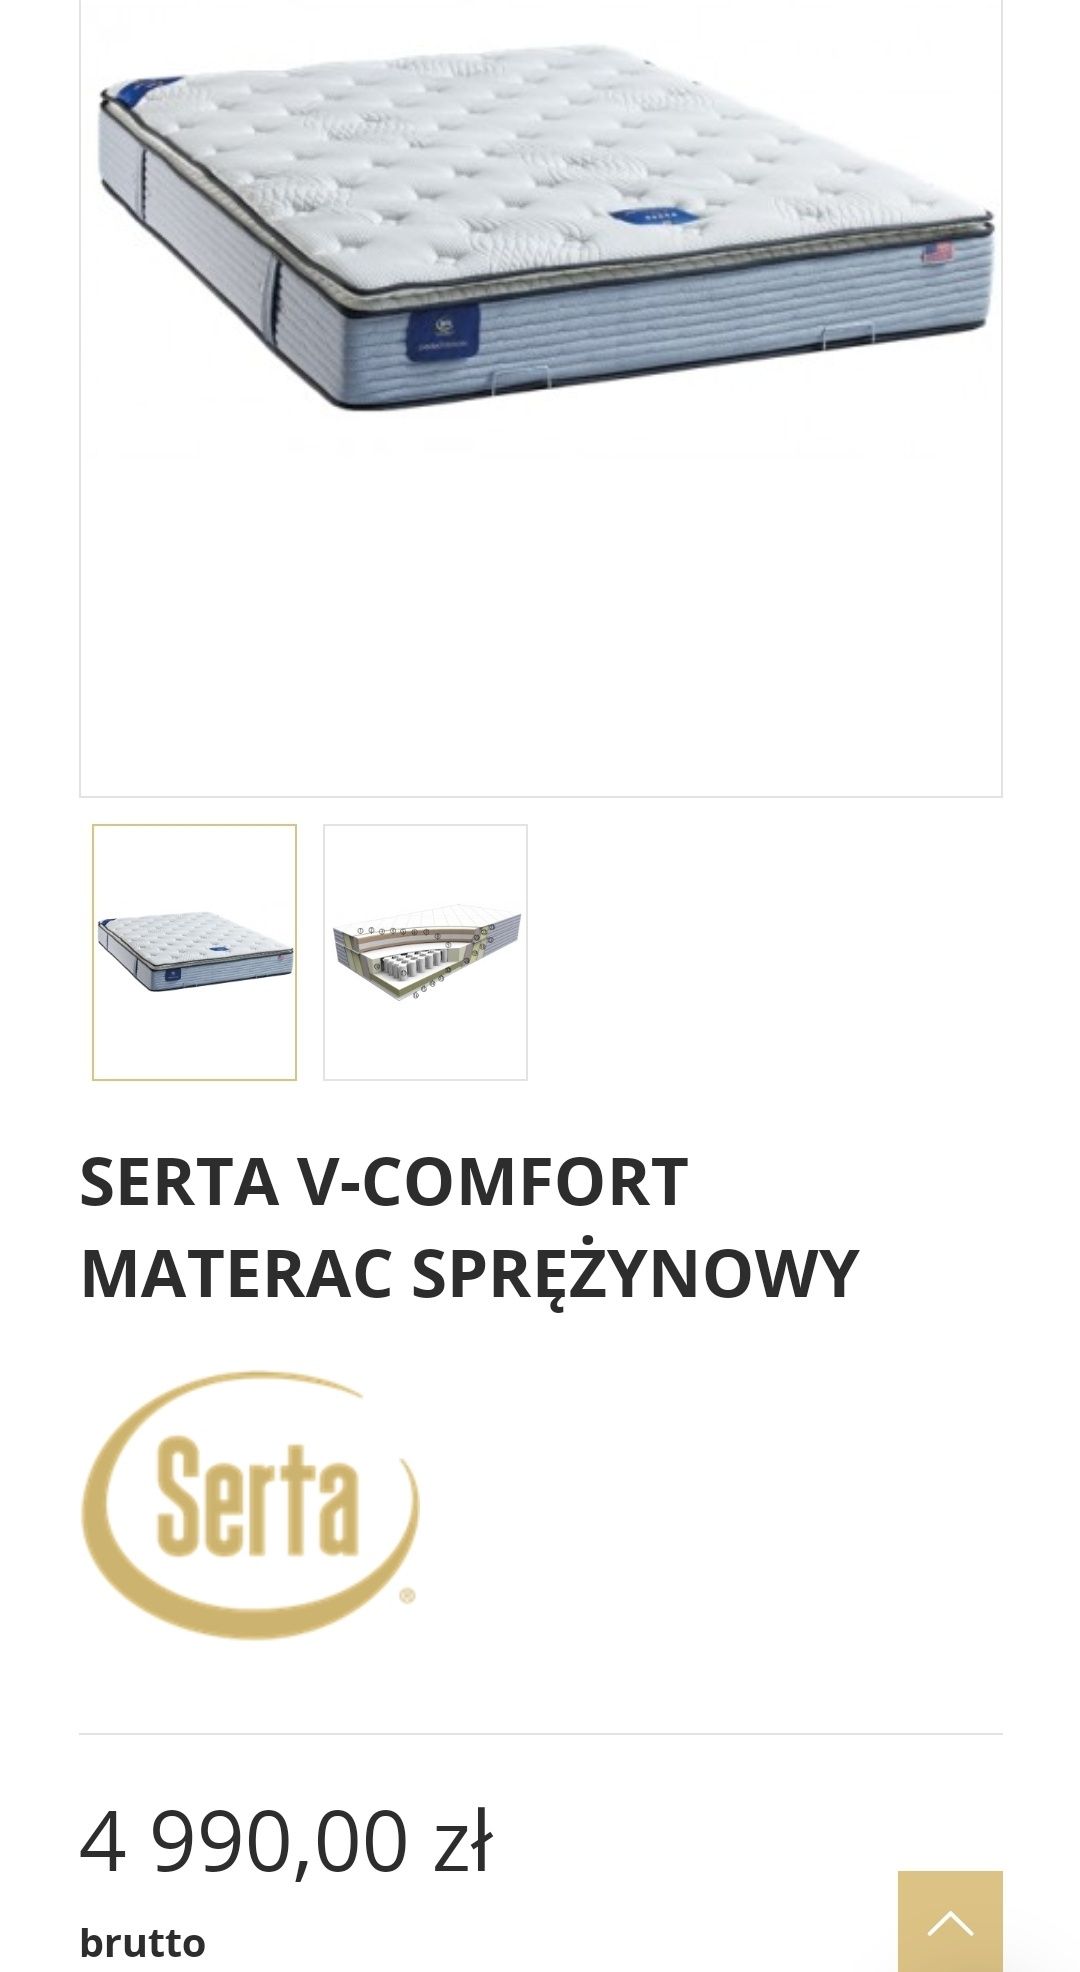 Ekskluzywny materac V-Comfort Serta